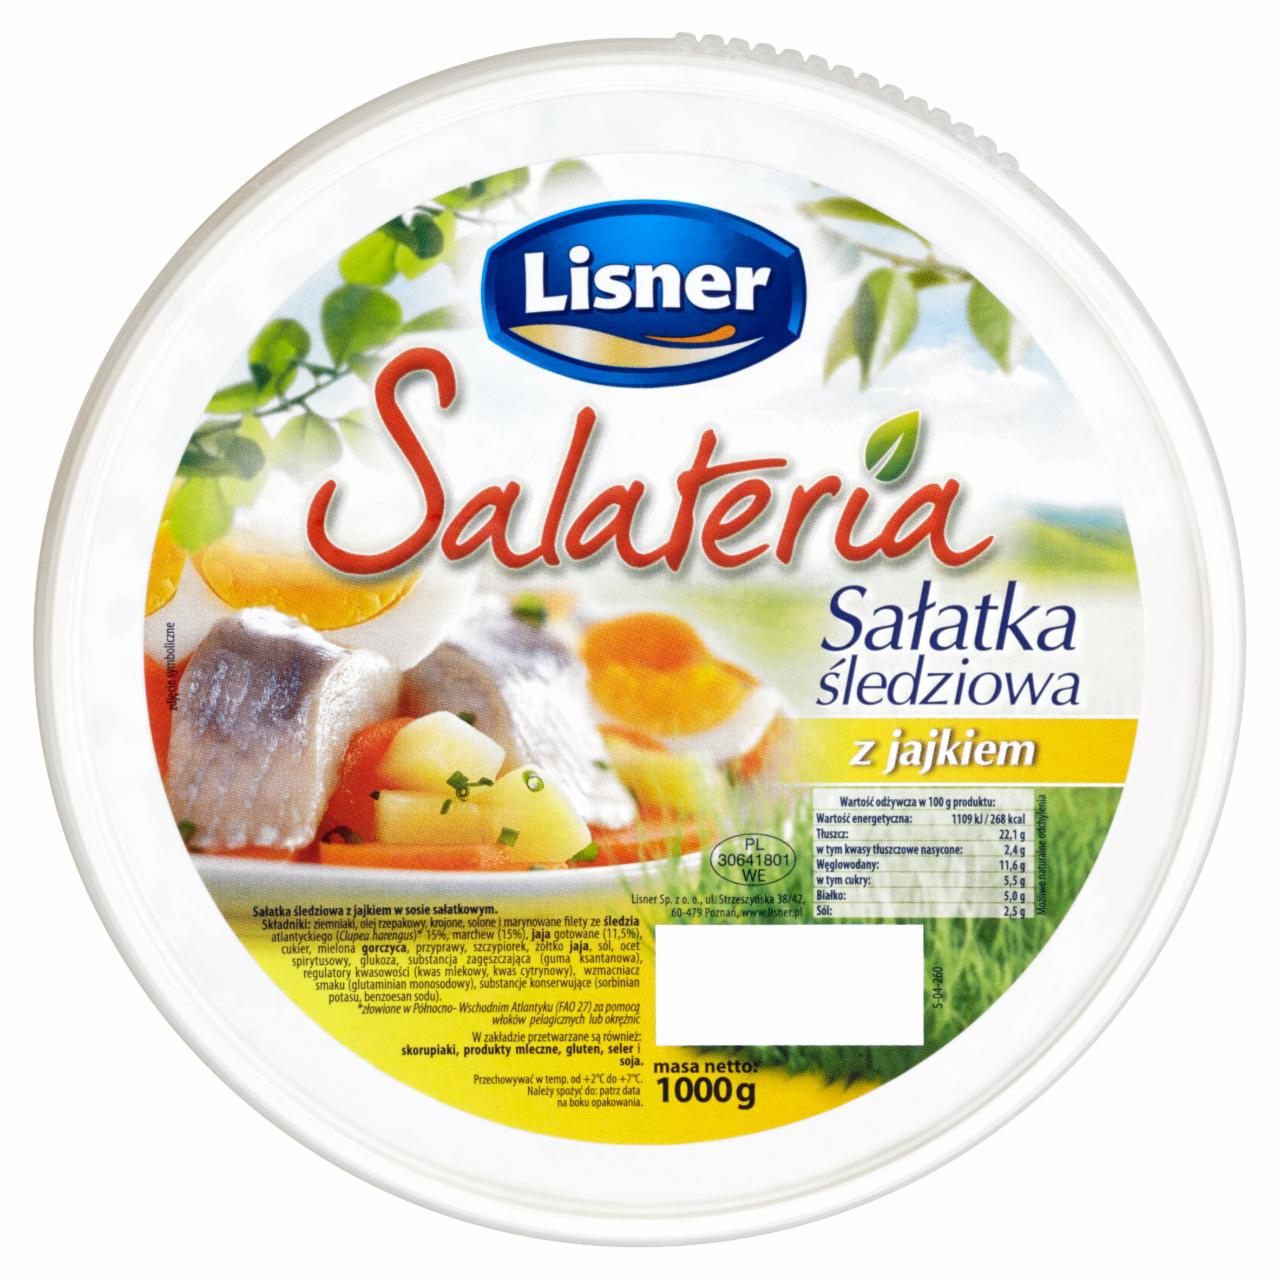 Zdjęcia - Lisner Salateria Sałatka śledziowa z jajkiem 1000 g